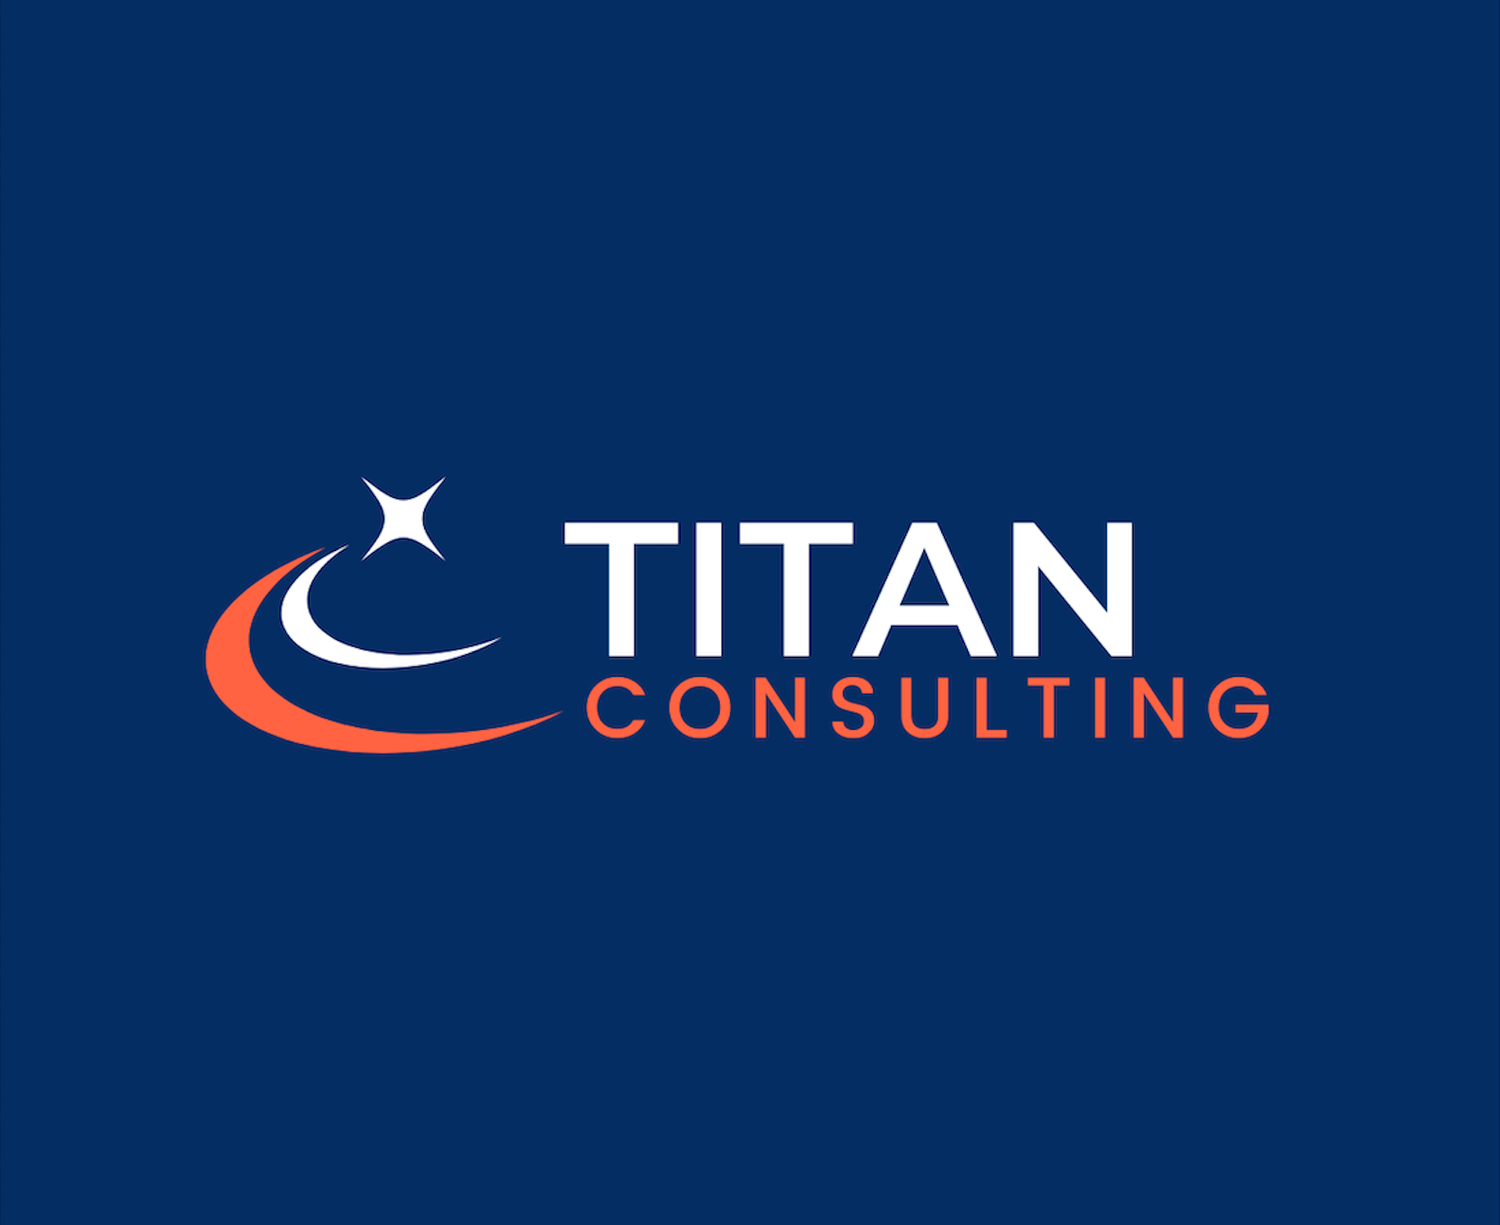 CSU, Fullerton Titan Consulting Club